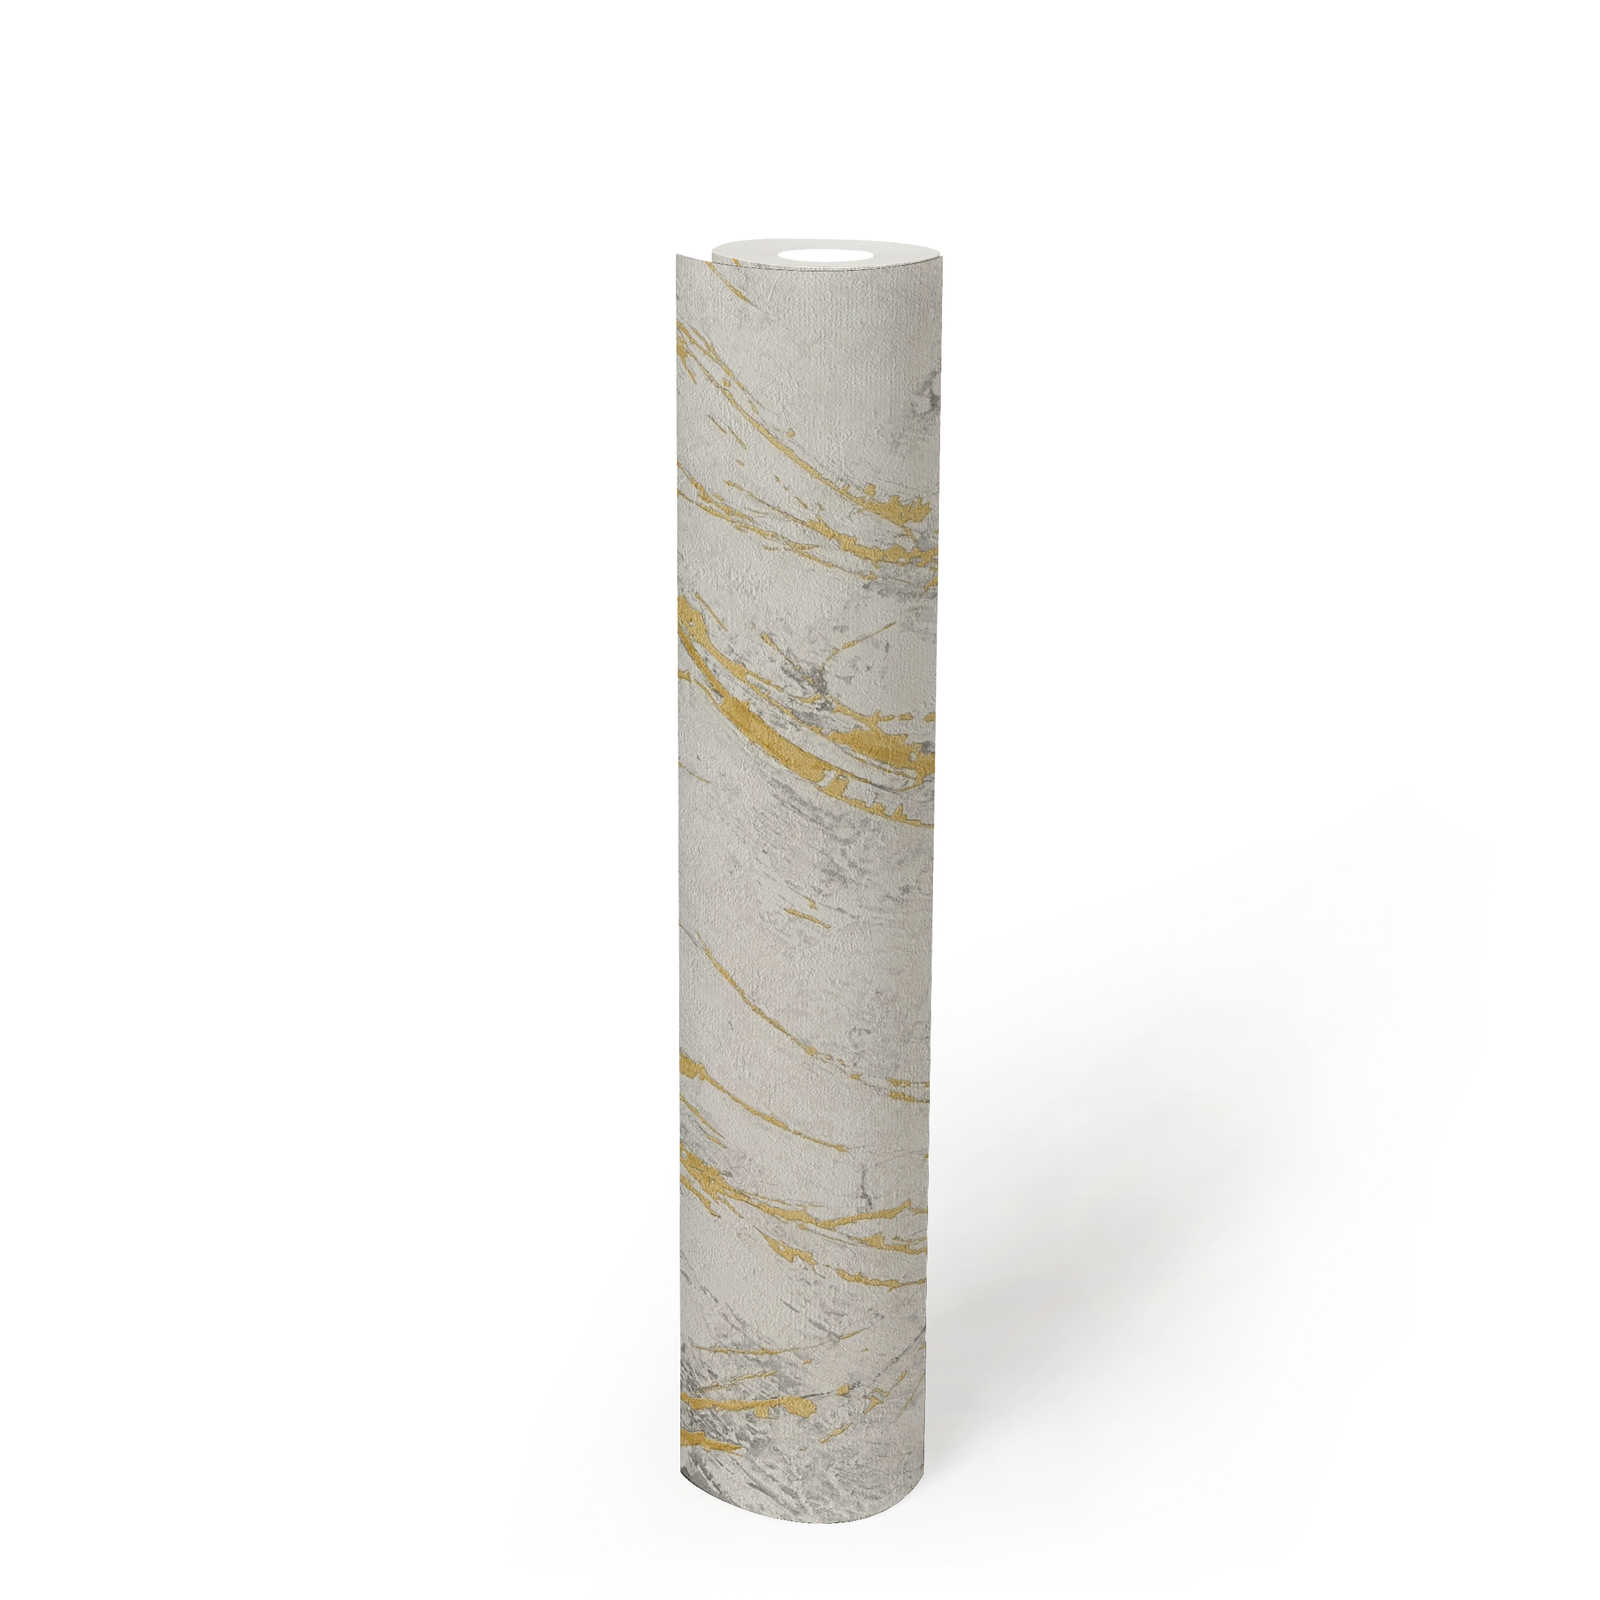             Goud marmer behang met metalen structuur ontwerp - wit, metallic
        